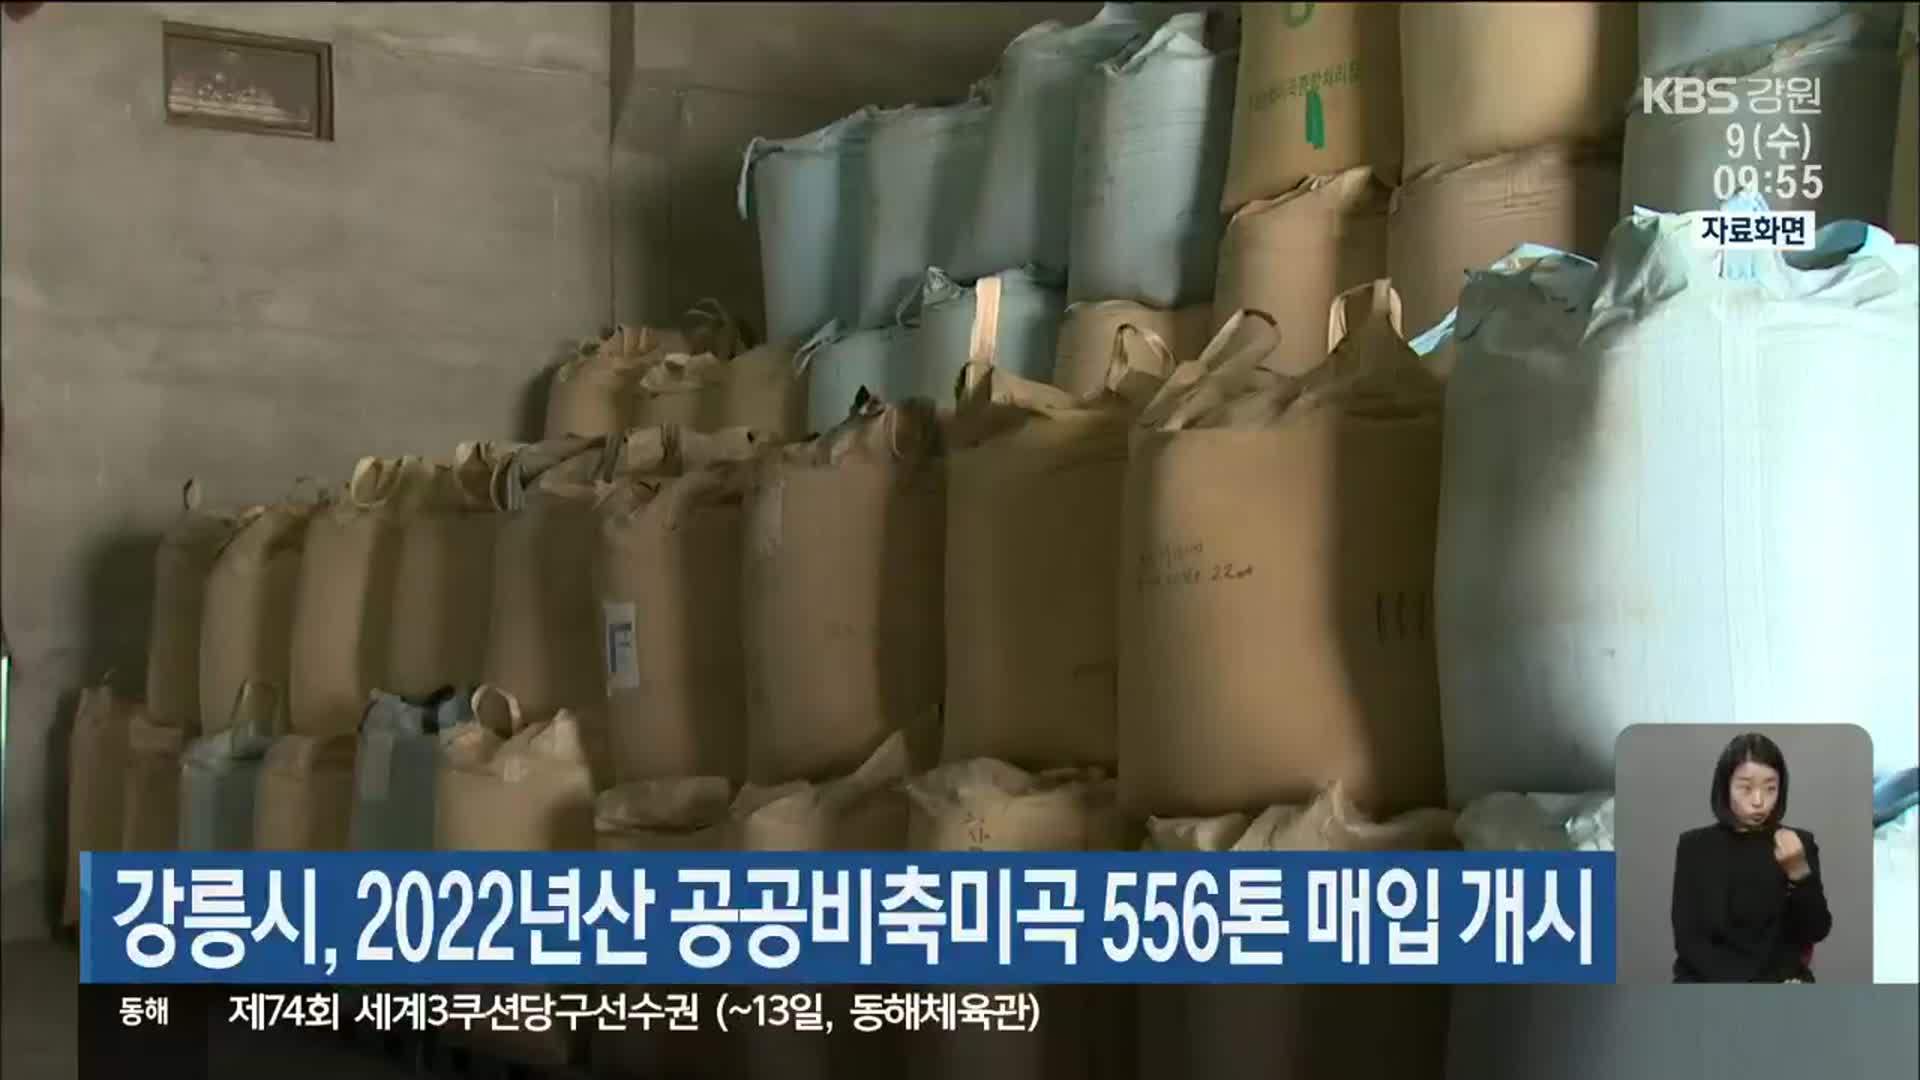 강릉시, 2022년산 공공비축미곡 556톤 매입 개시